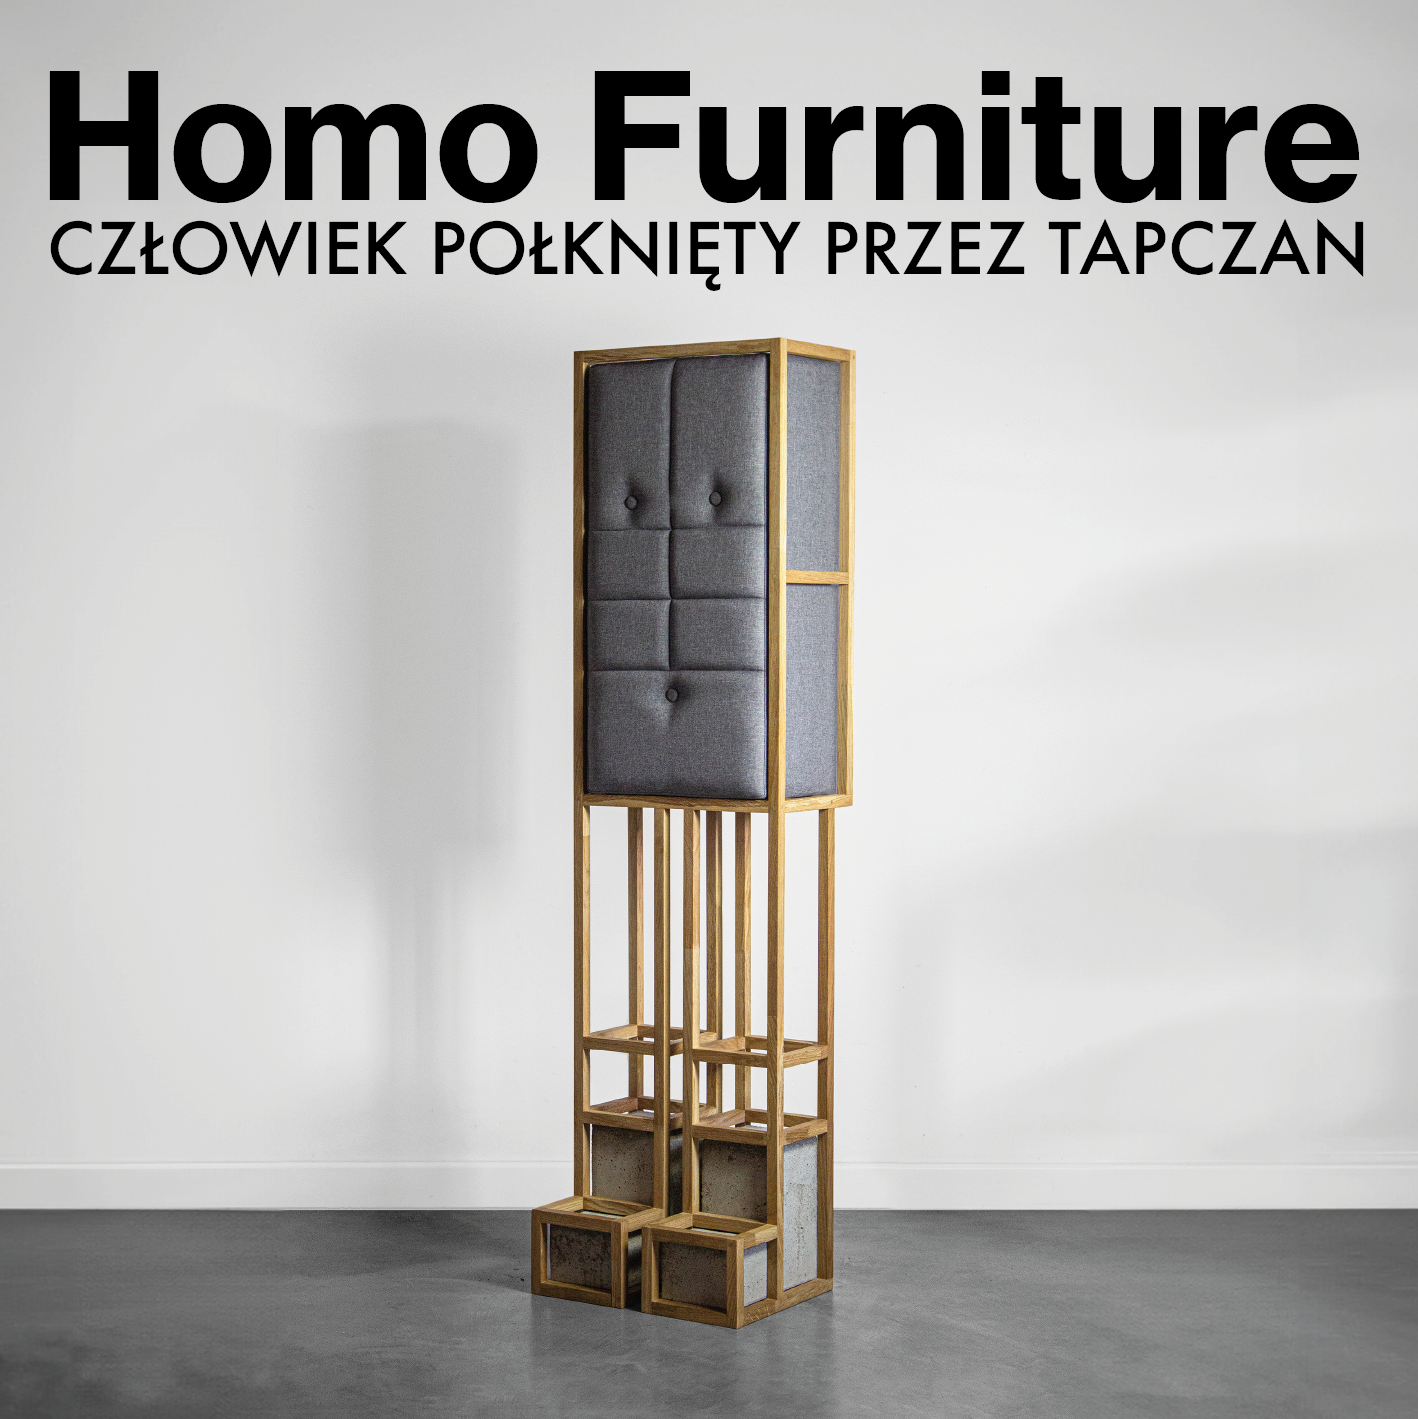 Homo Furniture. Człowiek połknięty przez tapczan – wystawa czasowa